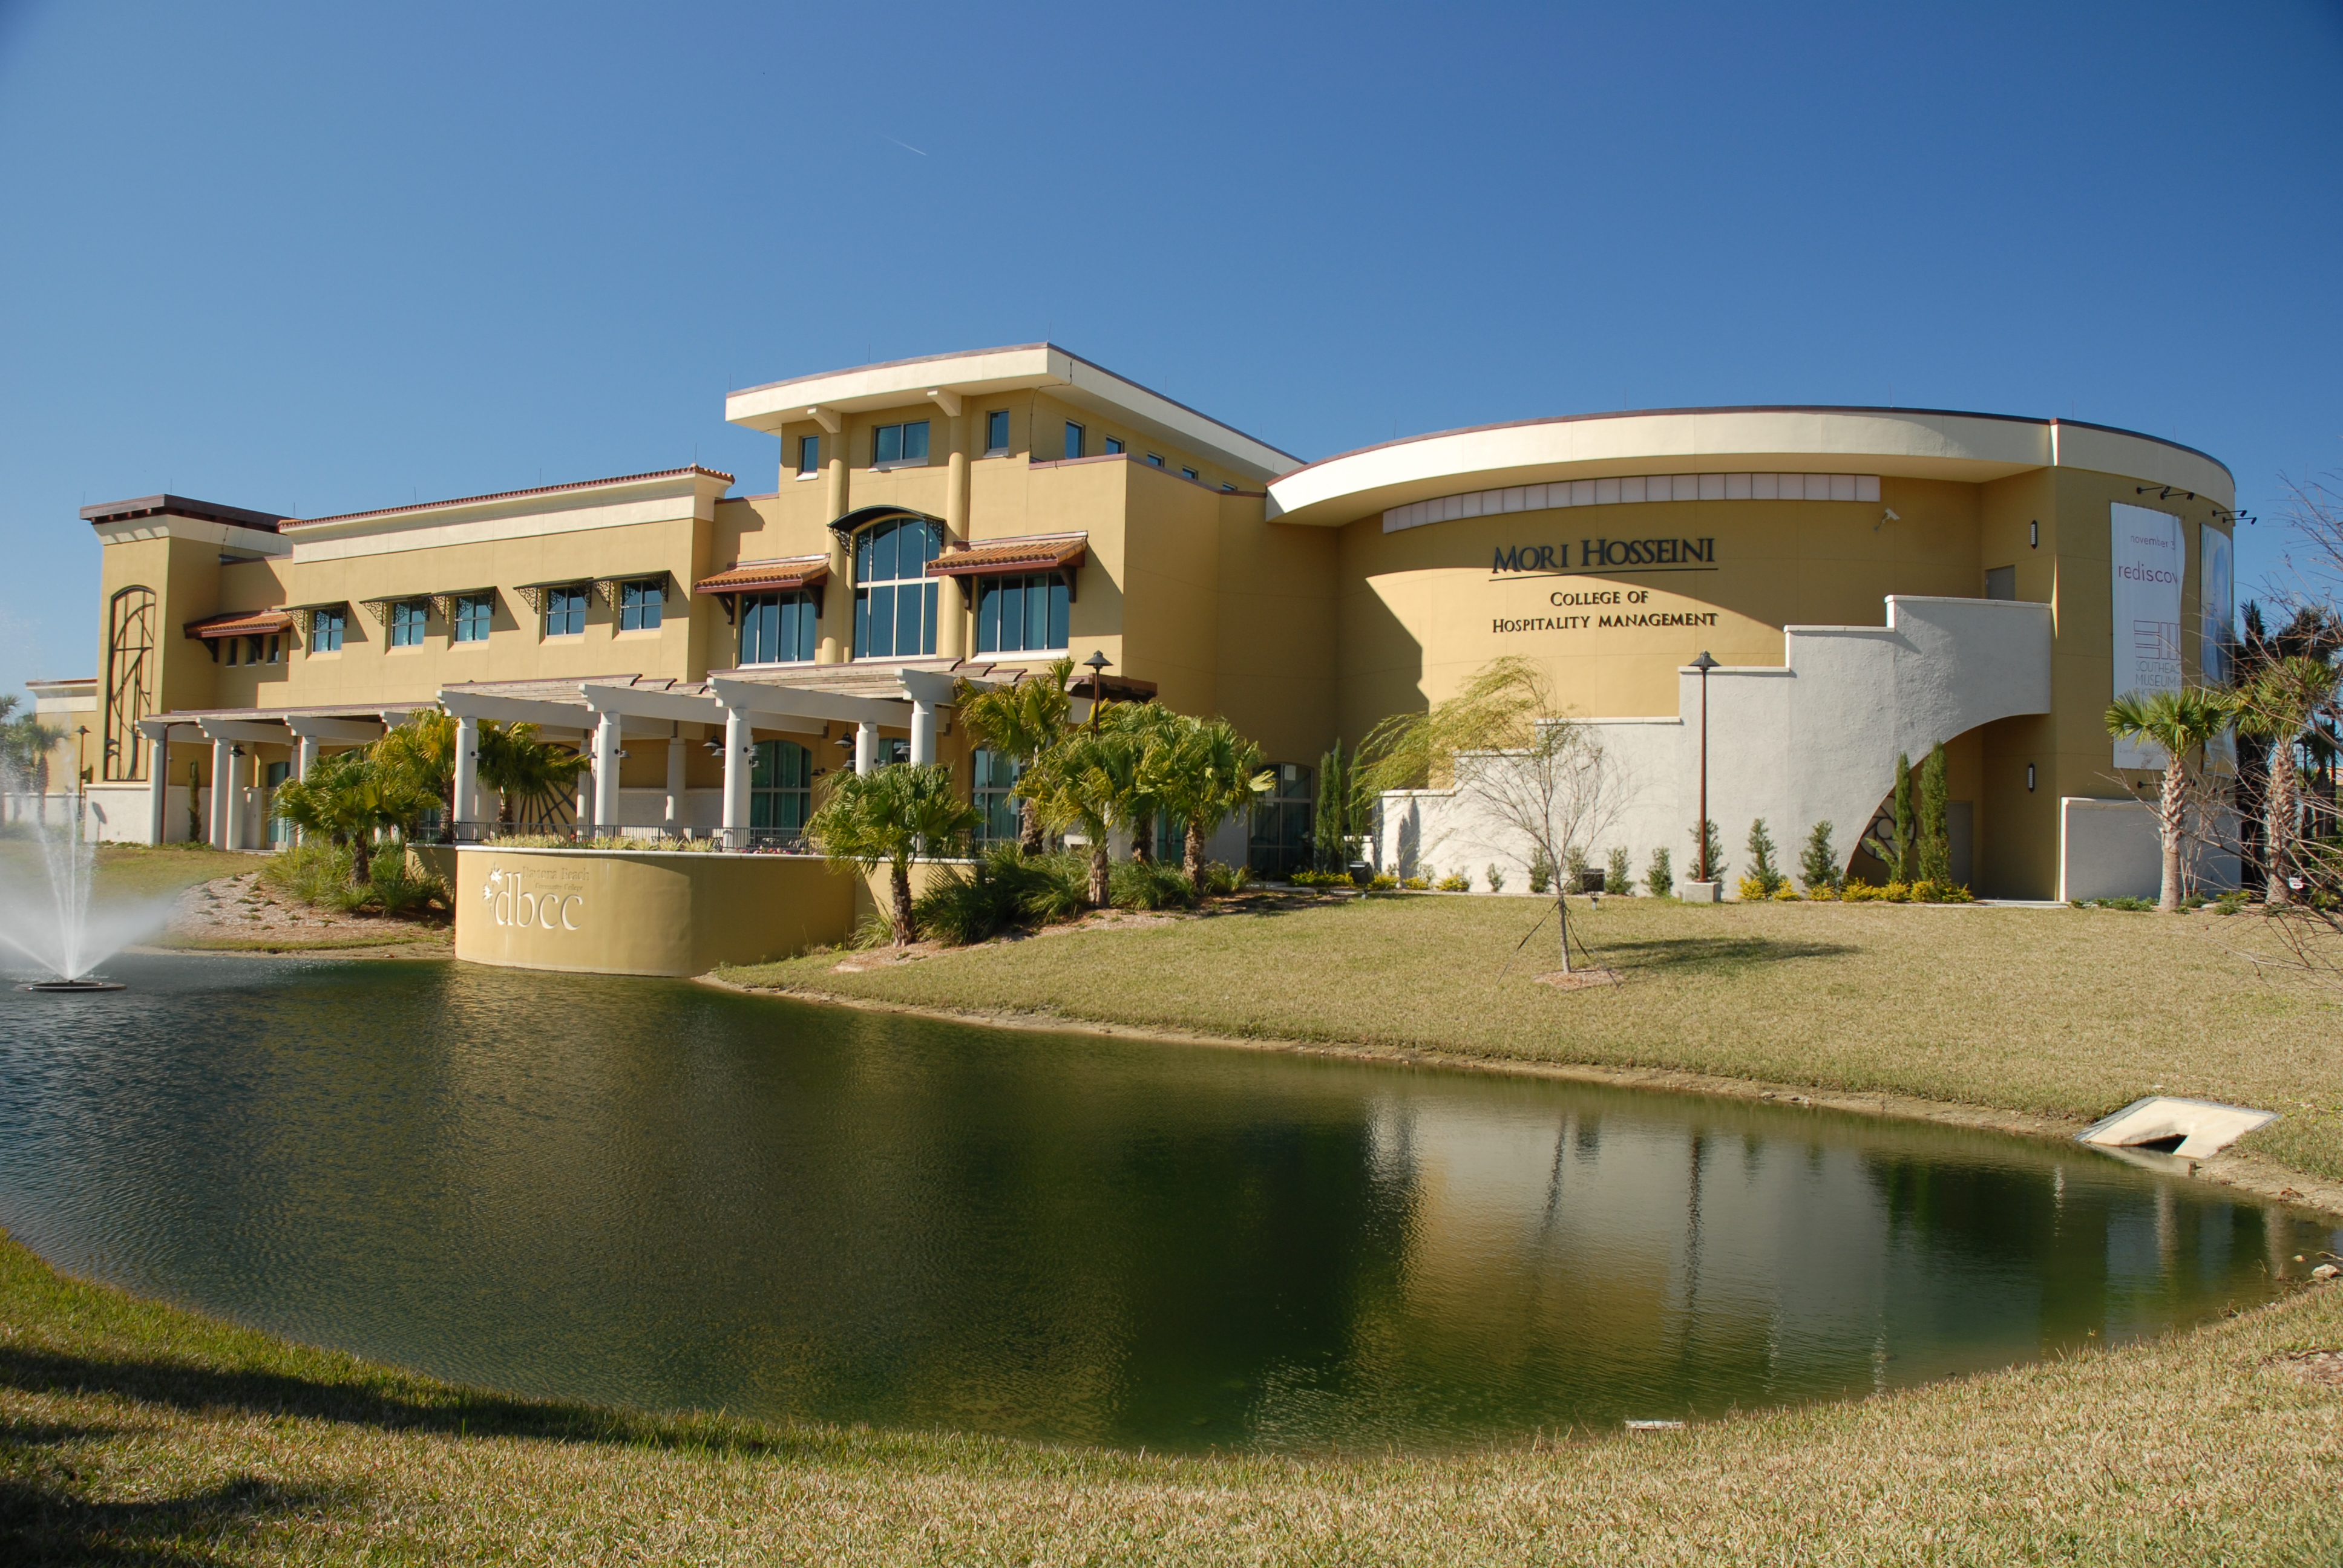 Design of the Mori Hosseini Center at Daytona State College – Cape Design  Engineering Co.